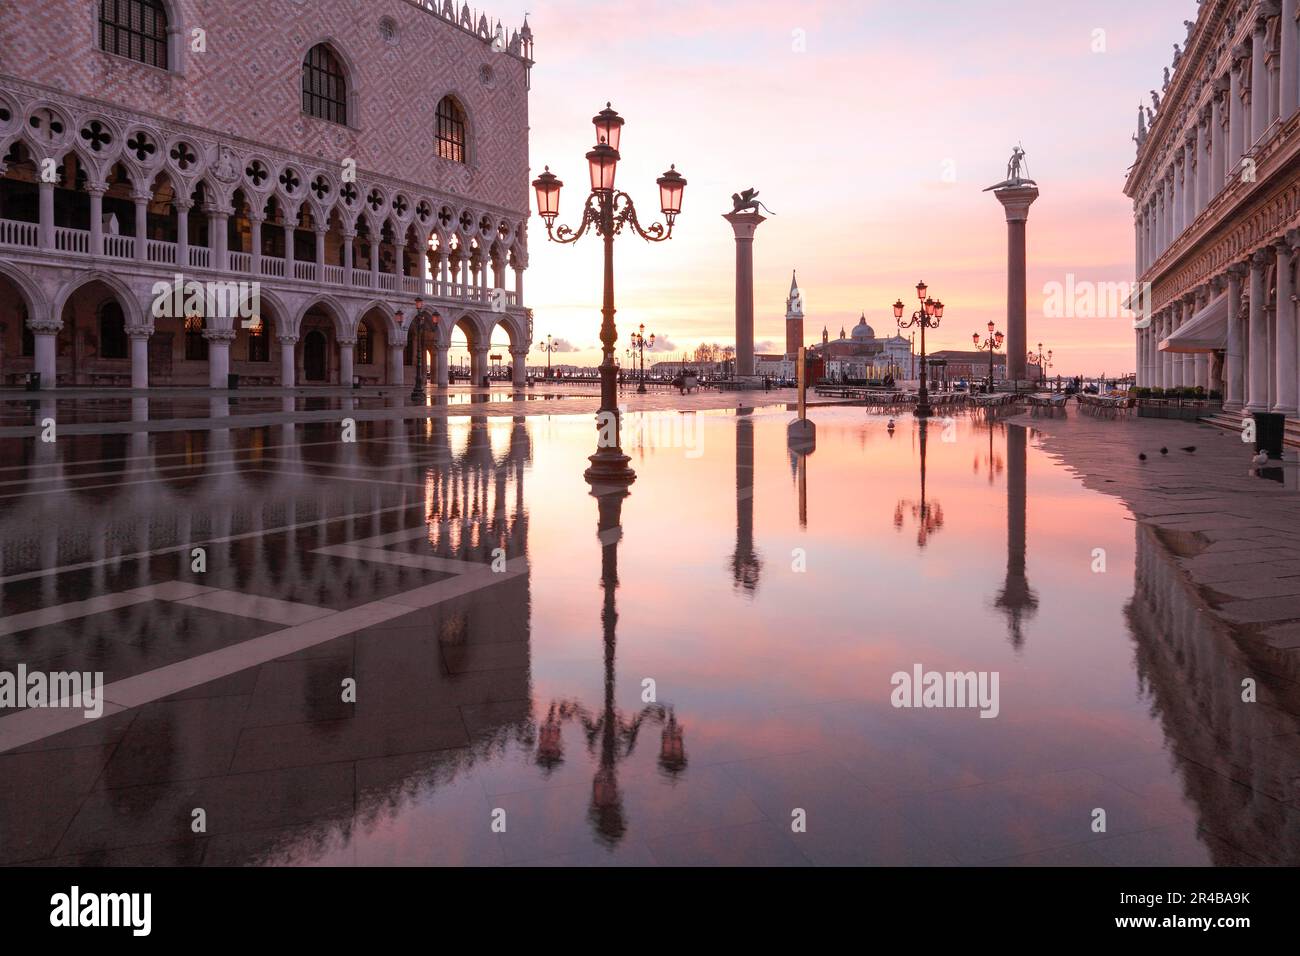 Acqua alta, alluvione di marea in Piazza San Marco, Venezia, Veneto, Italia Foto Stock